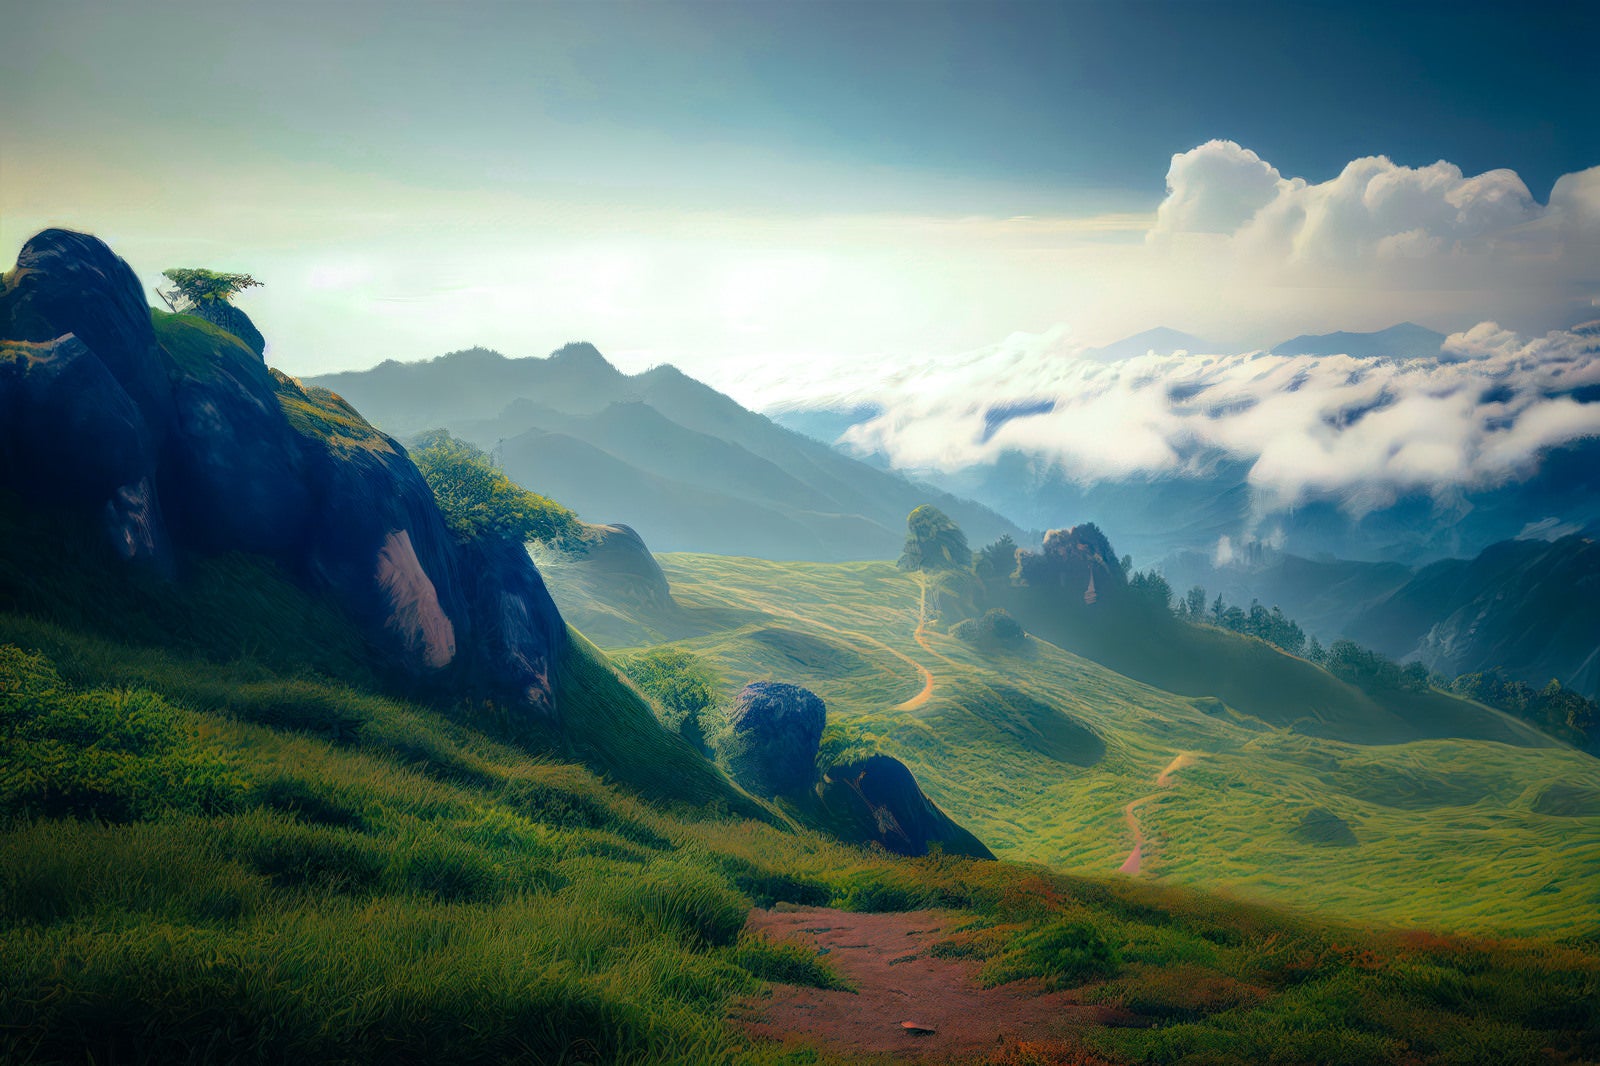 「登山道の麓から見る山々の美」の写真